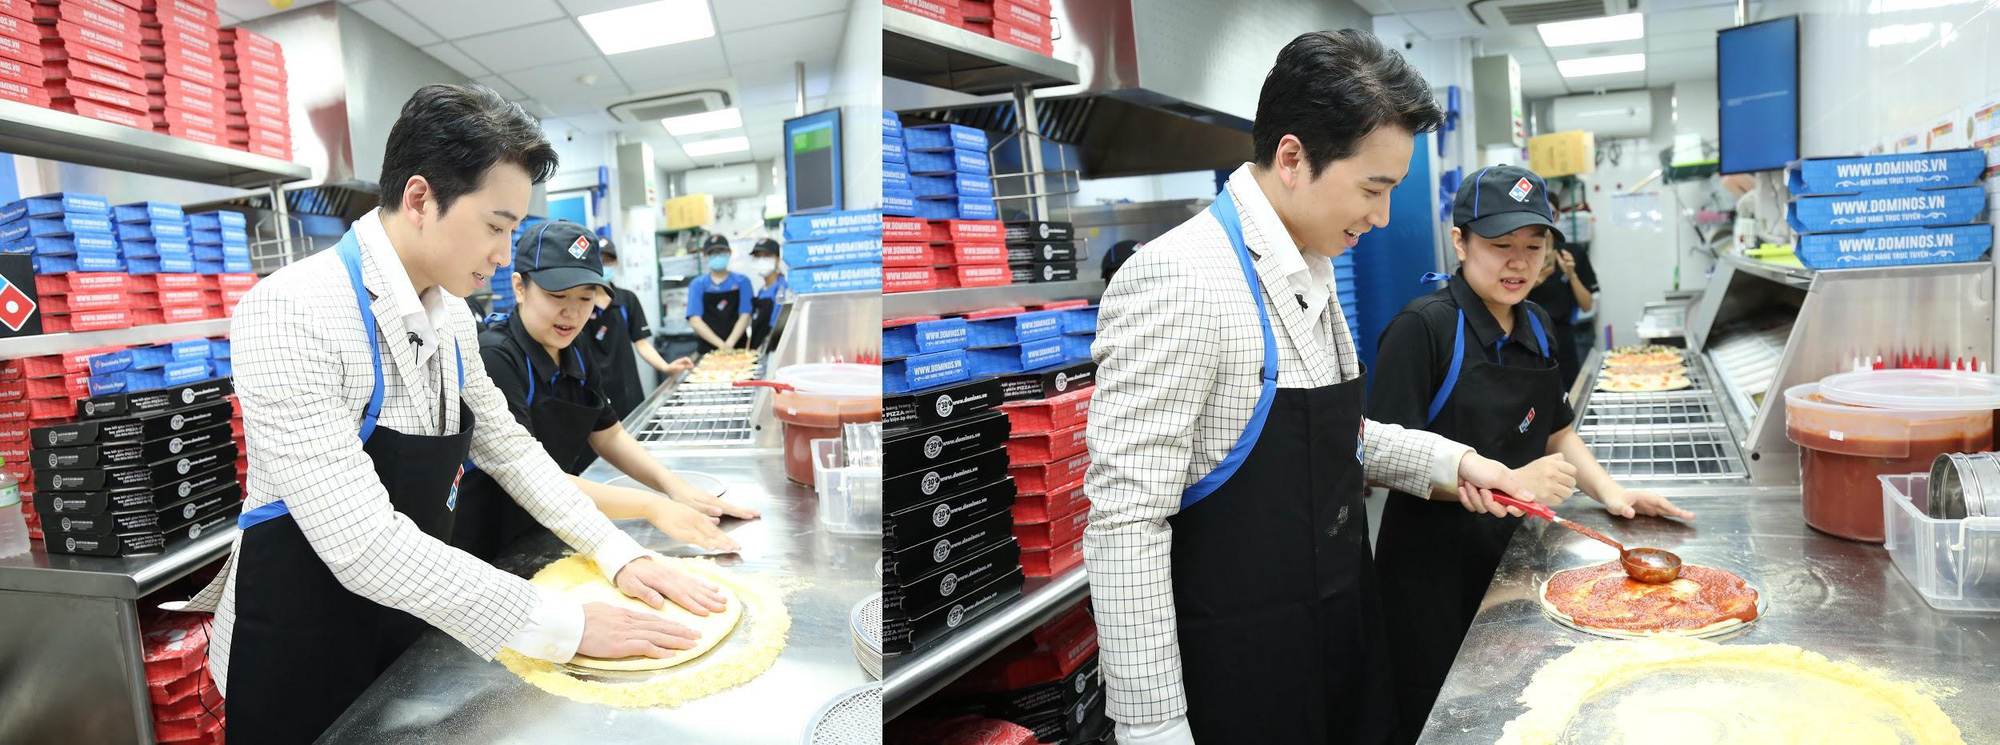 Sau Chung kết Rap Việt, Karik trở thành “Hoàng tử pizza” khuấy động buổi khai trương cửa hàng thứ 50 - Domino’s Phạm Hồng Thái - Ảnh 3.